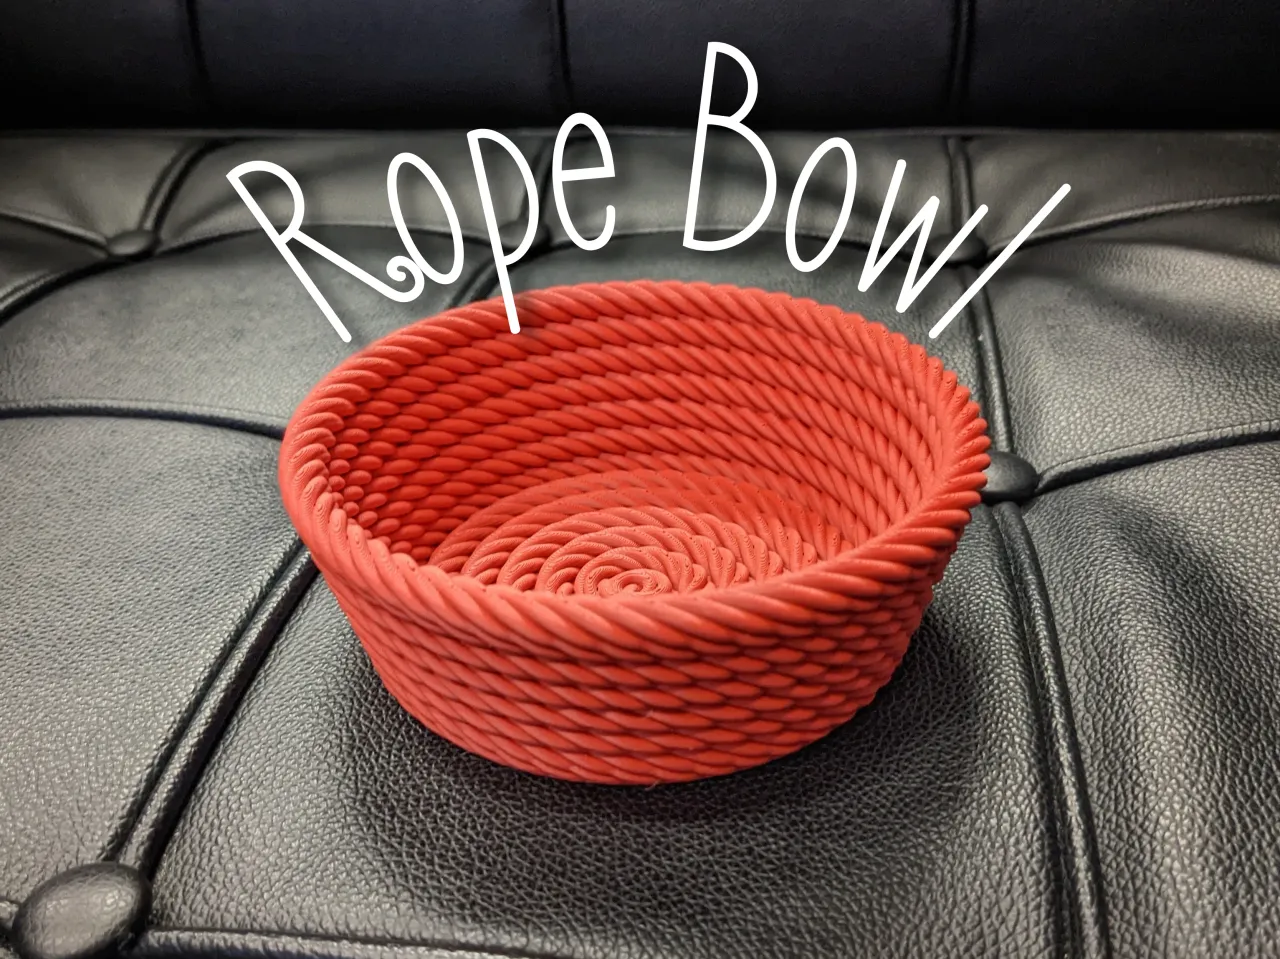 Rope Bowl 3d model